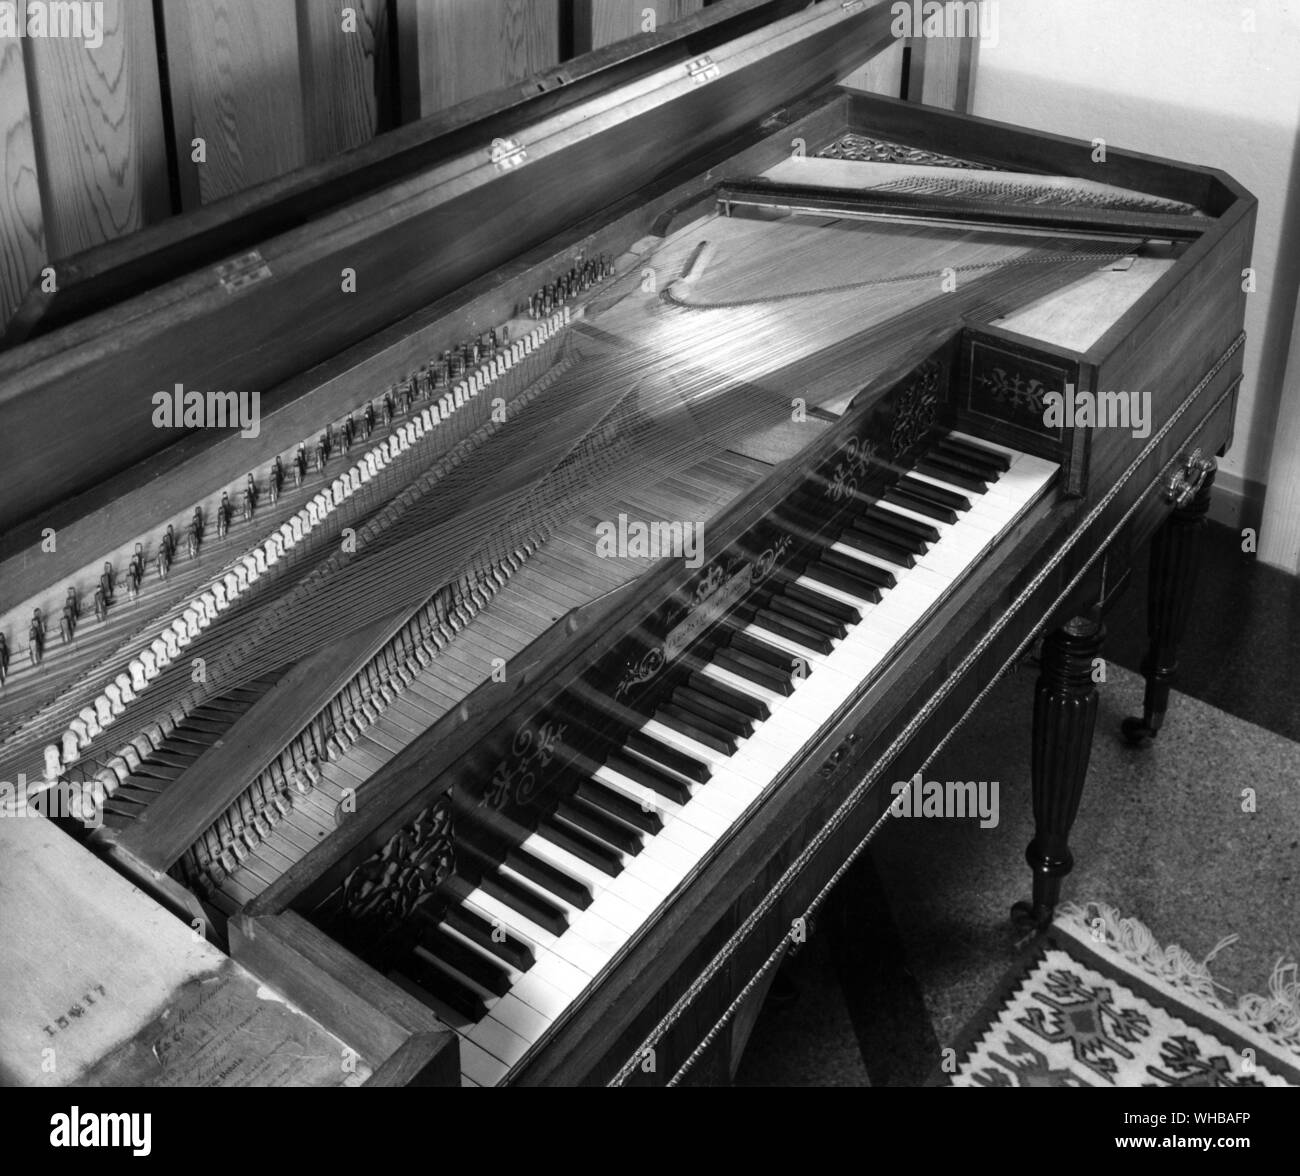 Square Piano zeigen das Innere des Instruments, ca. 1825, von Clementi - beachten Sie die harmonischen Wellen auf der rechten Seite - patentierte 1821. Länge 72 1/2 Zoll oder 183,5 cm Breite 26 cm oder 67,3 cm. Die Colt Cavier Sammlung Bethersden Kent Stockfoto